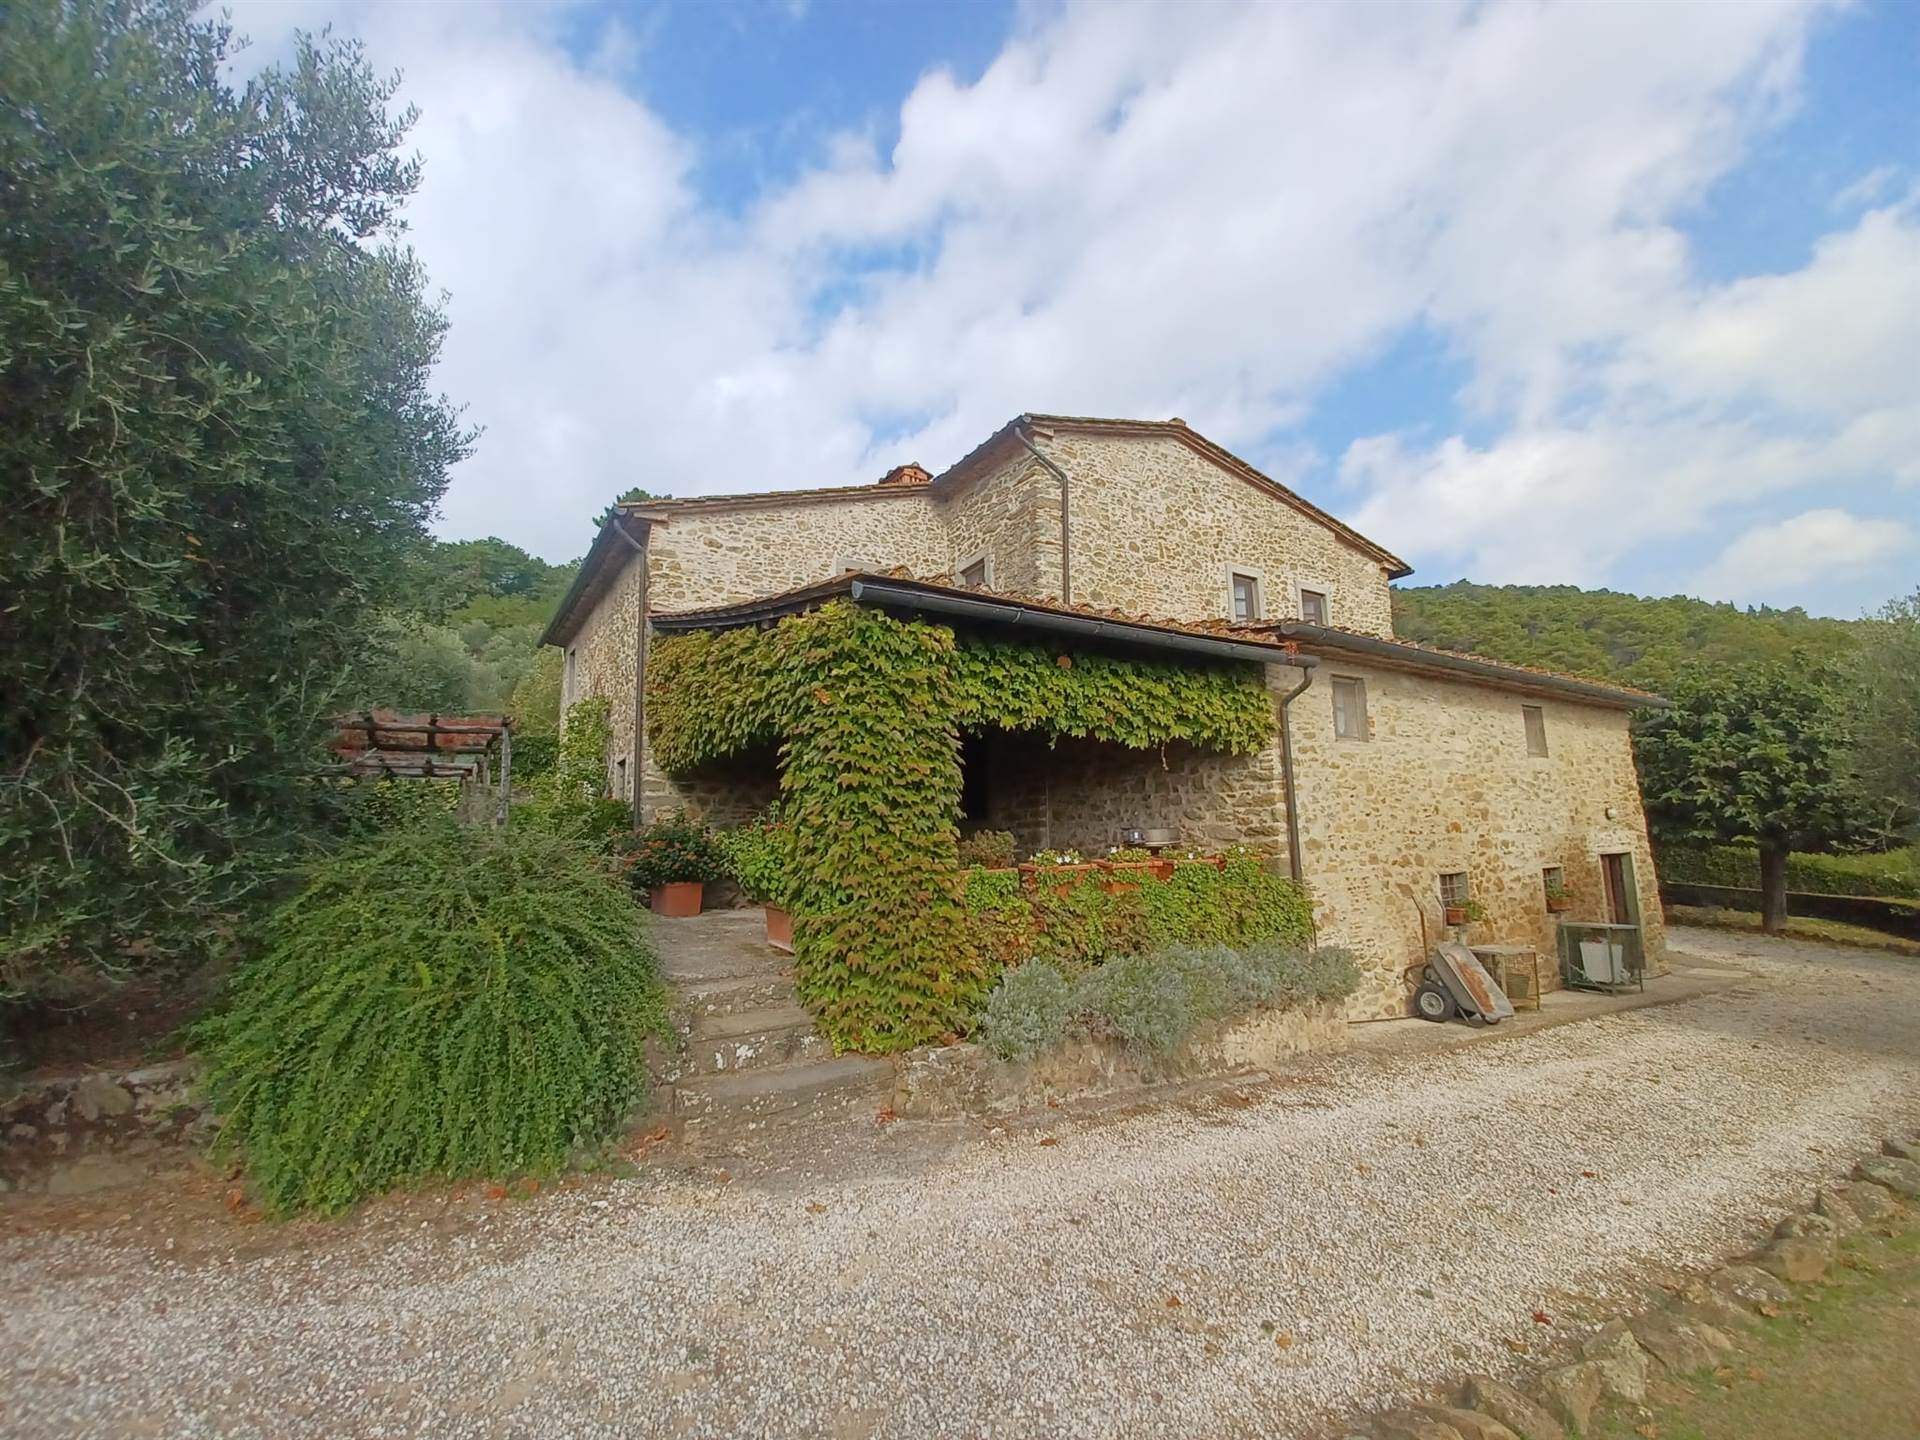 Villa in ottime condizioni in zona Stazione Masotti a Serravalle Pistoiese